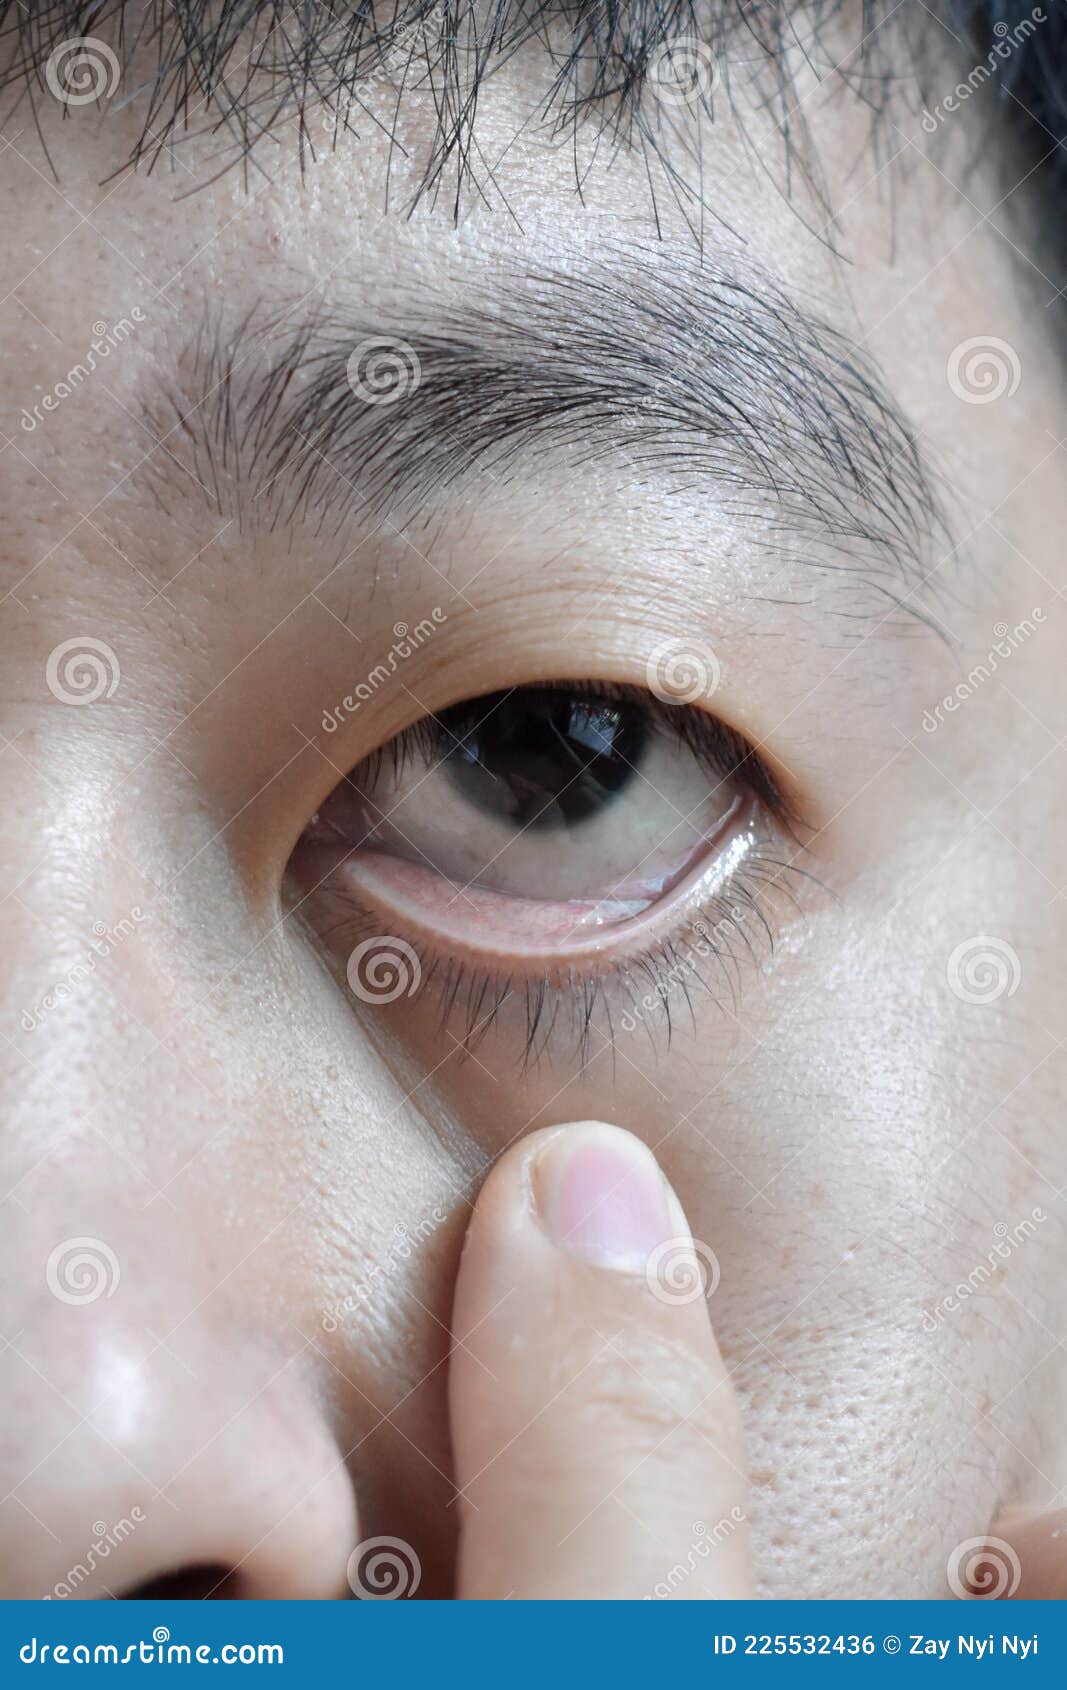 亚洲人的肤色苍白. 贫血症. 眼睑苍白 库存照片. 图片 包括有 表面, 严重, 紊乱, 符号, 面部 - 225486938